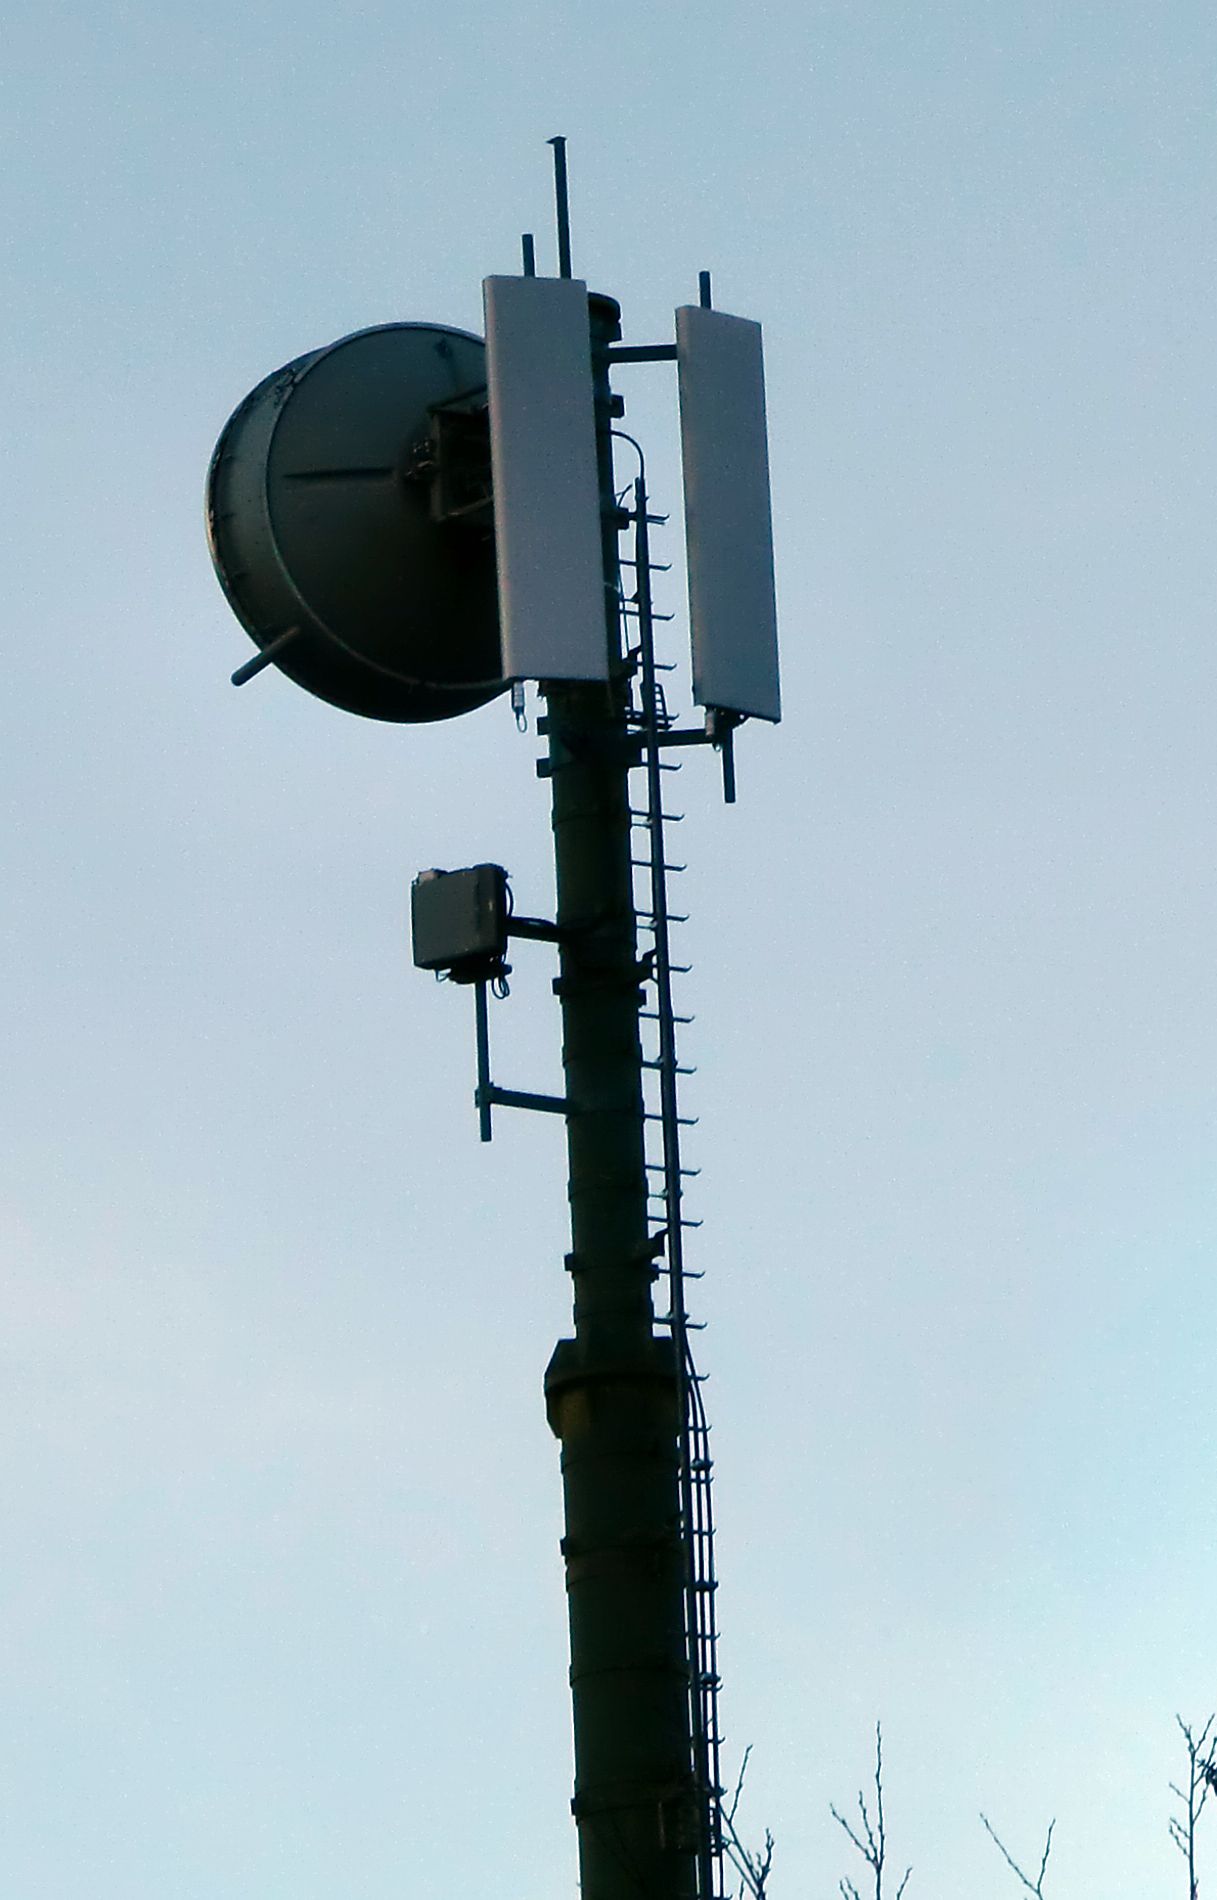 Die Antennen von Tim auf der Parabelstruktur von Telecom im November 2014